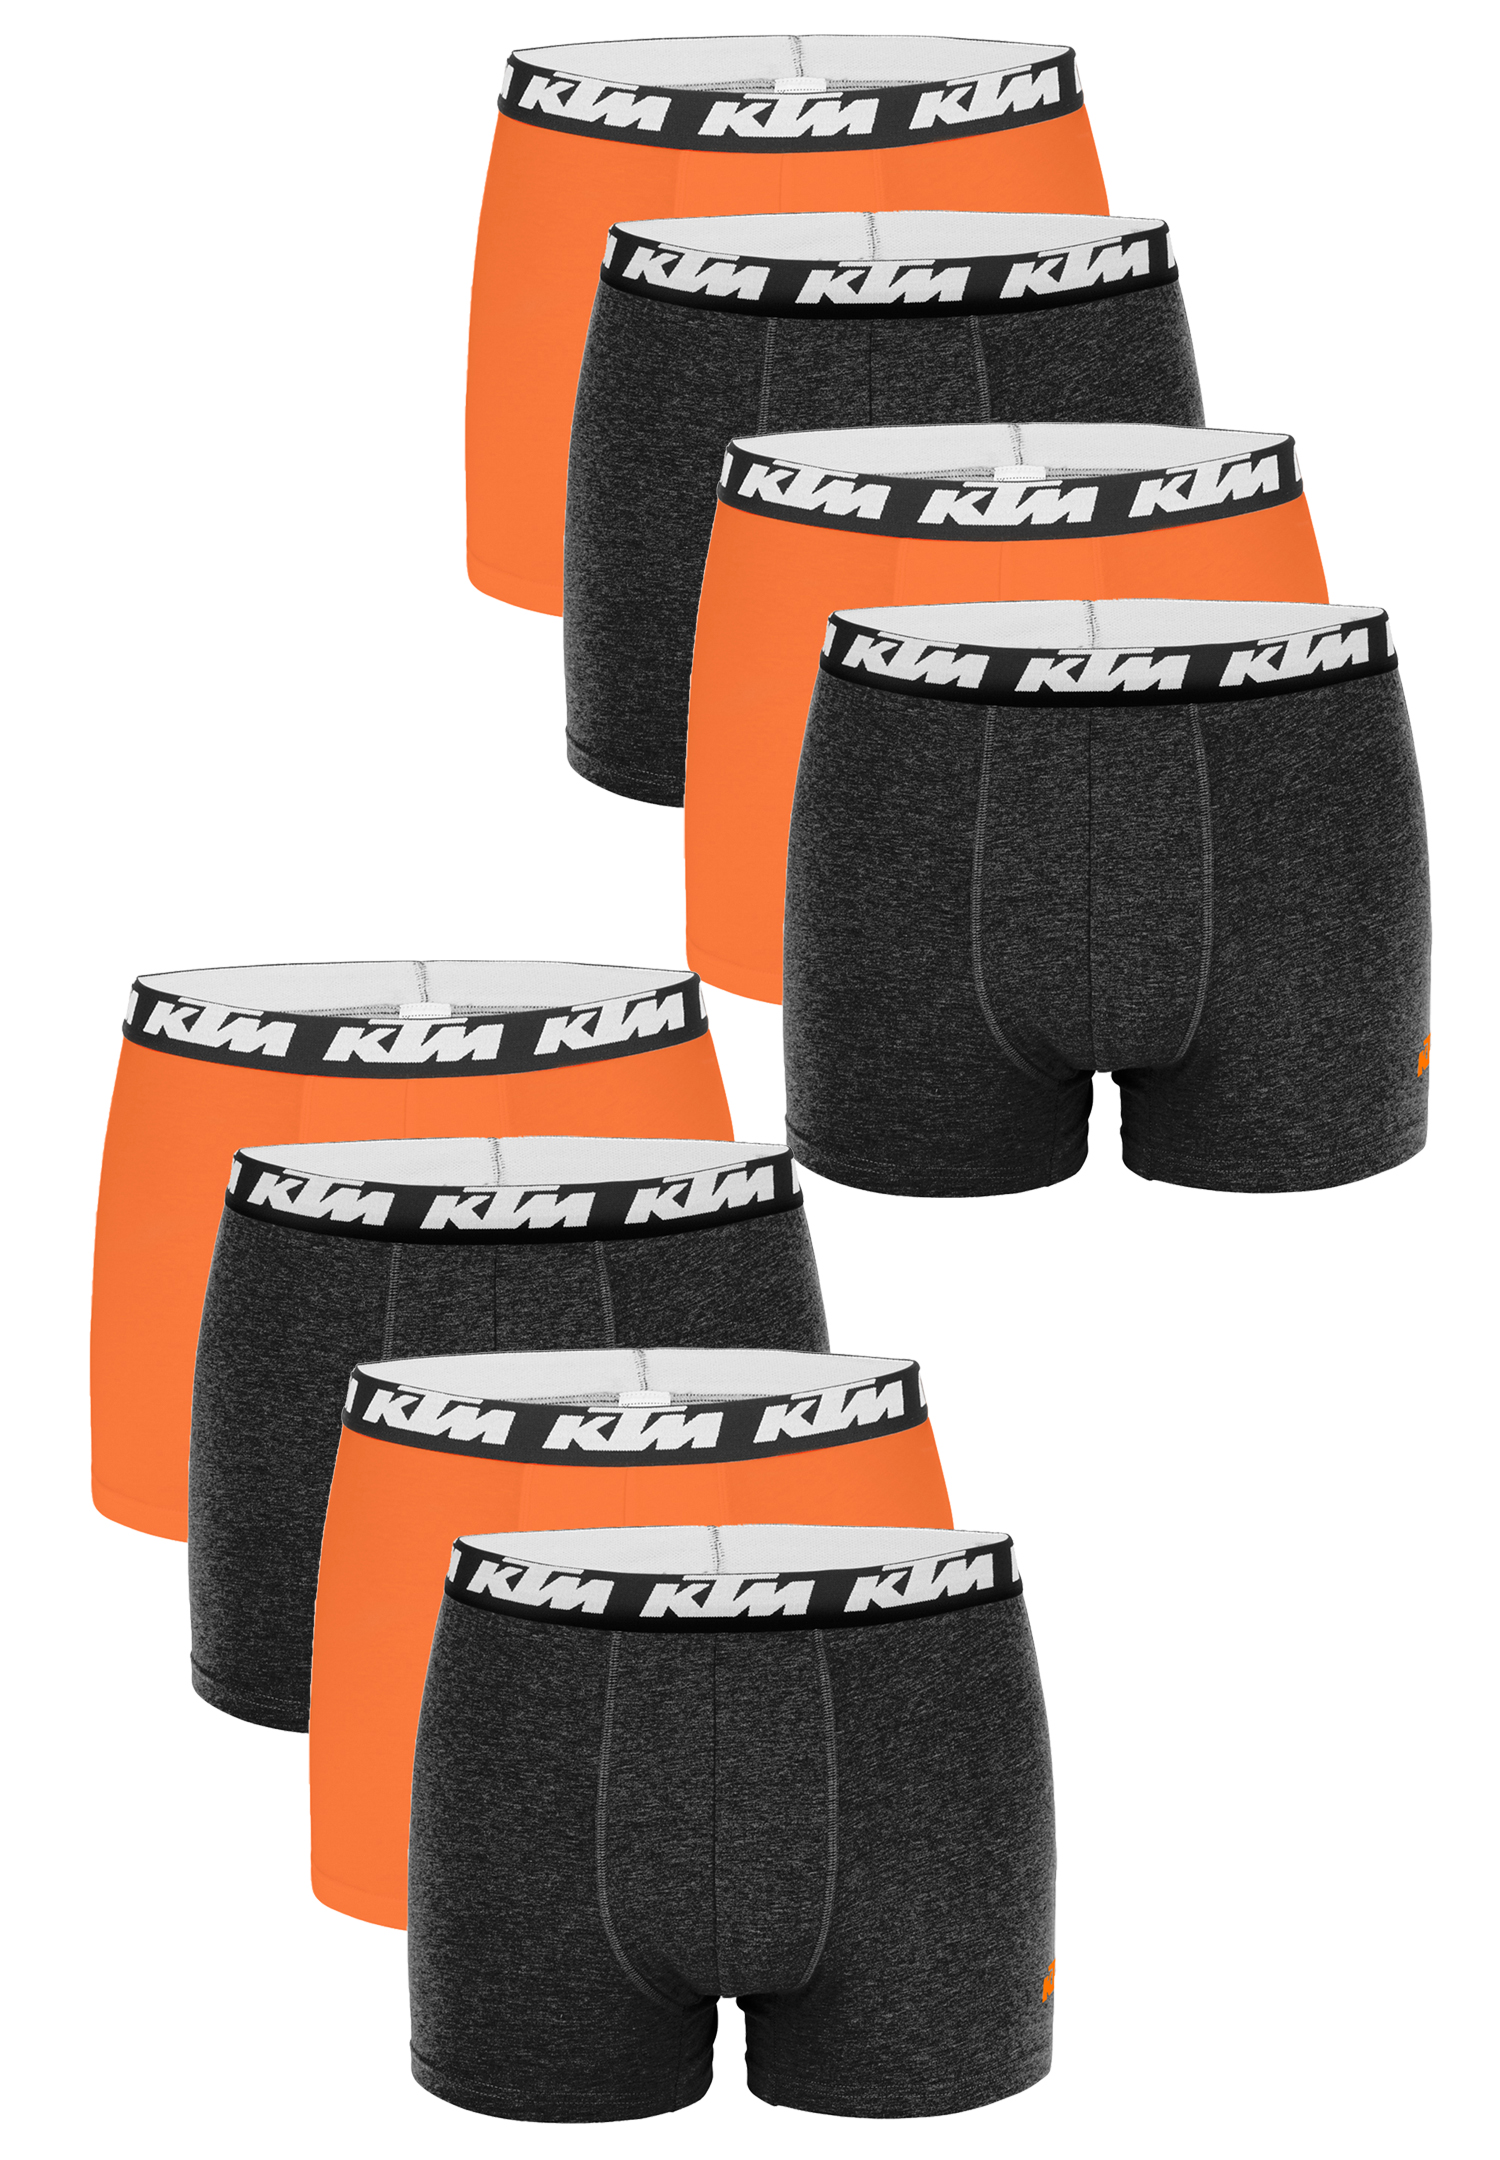 KTM Boxer Men Herren Boxershorts Pant Unterwäsche 6 er Pack, Farbe:Dark Grey / Orange, Bekleidungsgröße:M